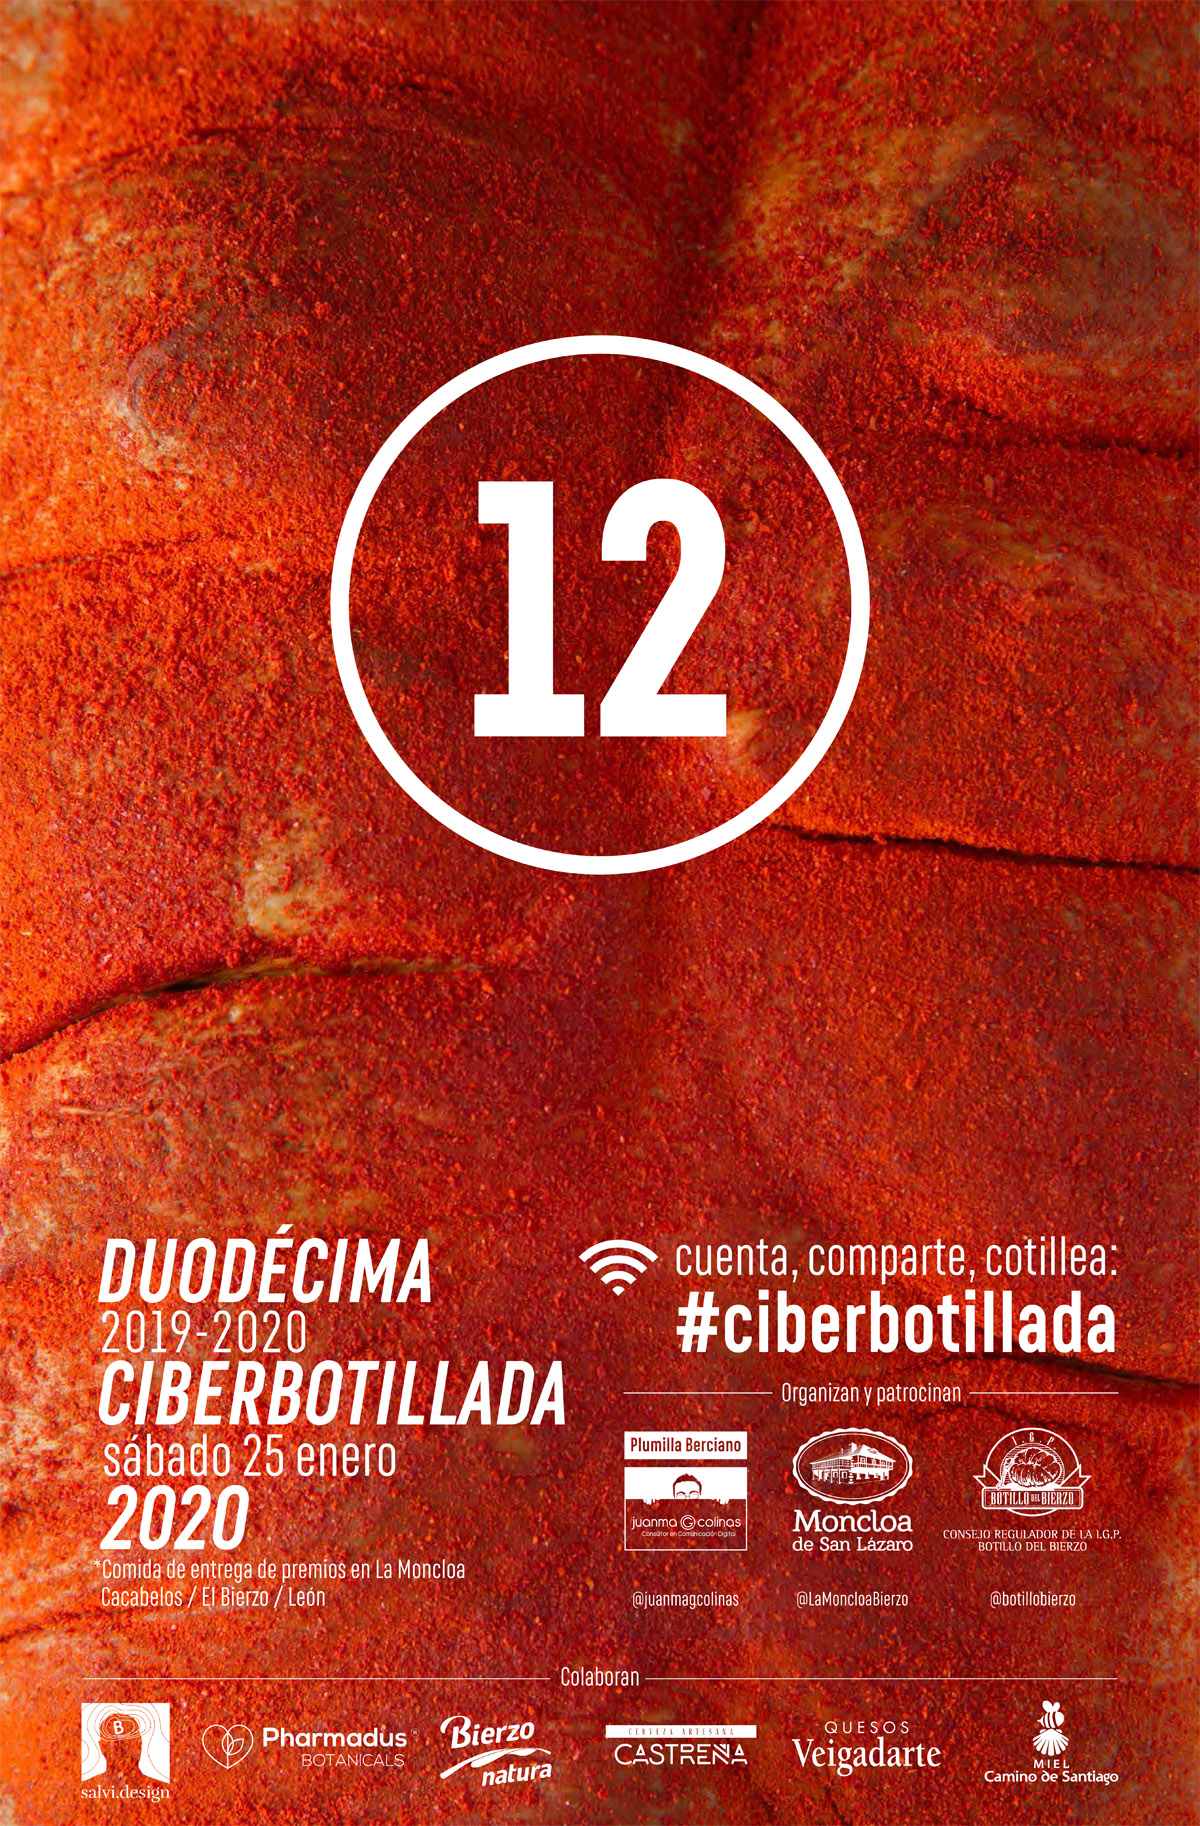 La 12 Ciberbotillada organizada por el blog Plumilla Berciano ya tiene ganadores 1